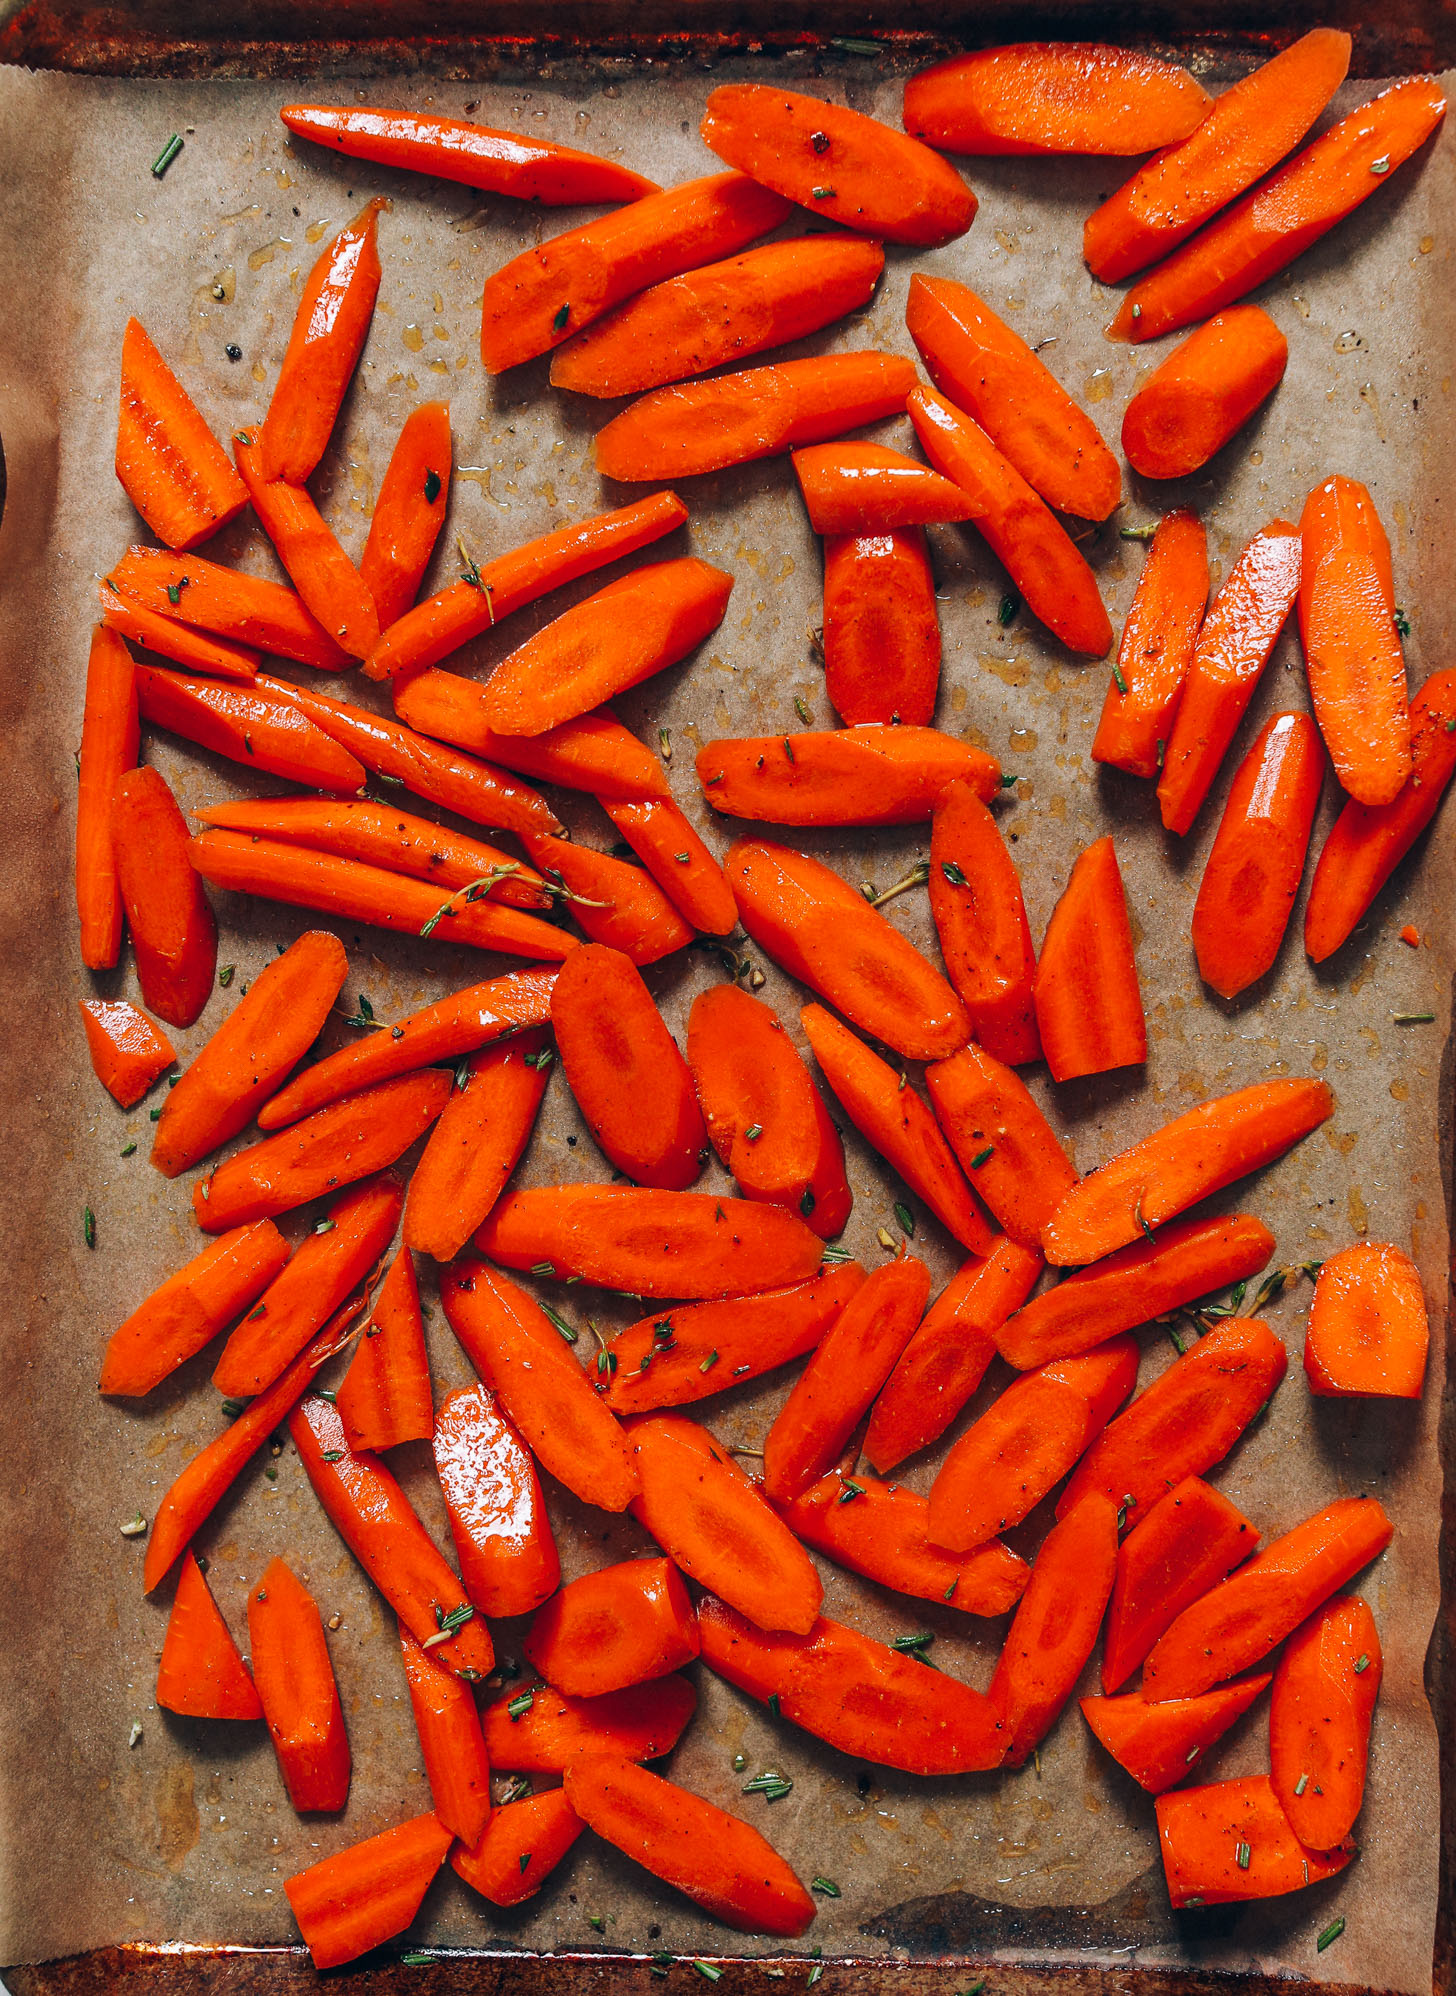 Cenouras fatiadas em uma assadeira com tomilho fresco